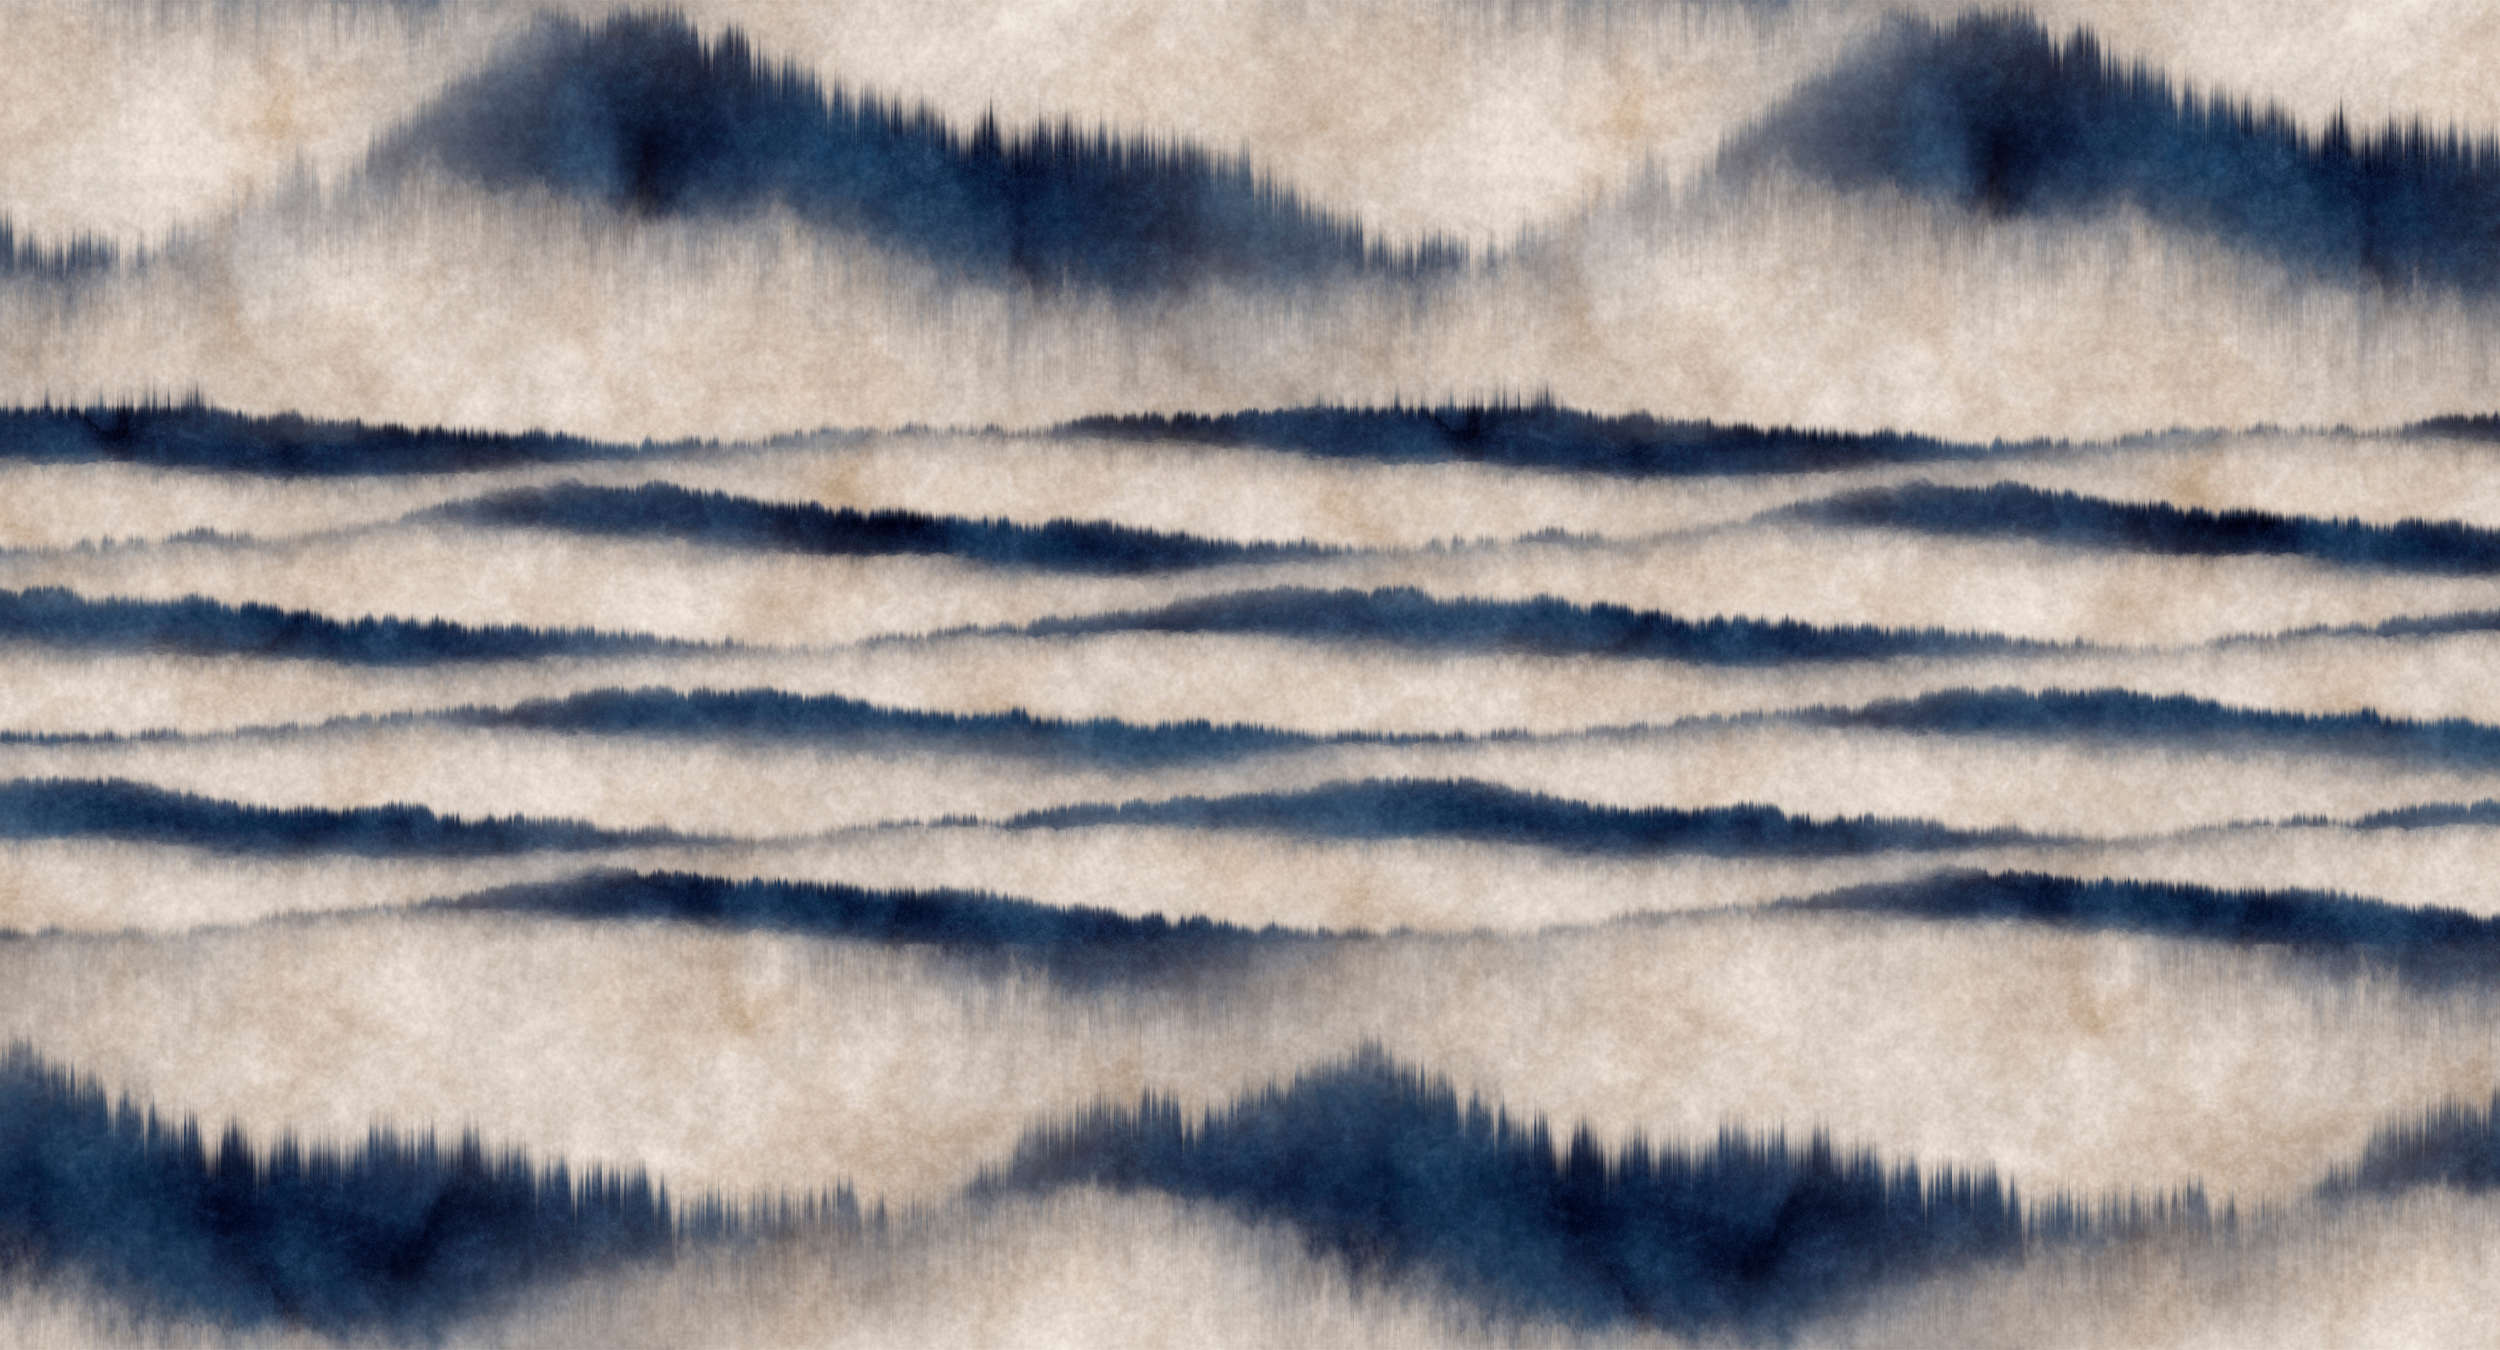             Muurschildering abstract patroon golven - Blauw, Wit
        